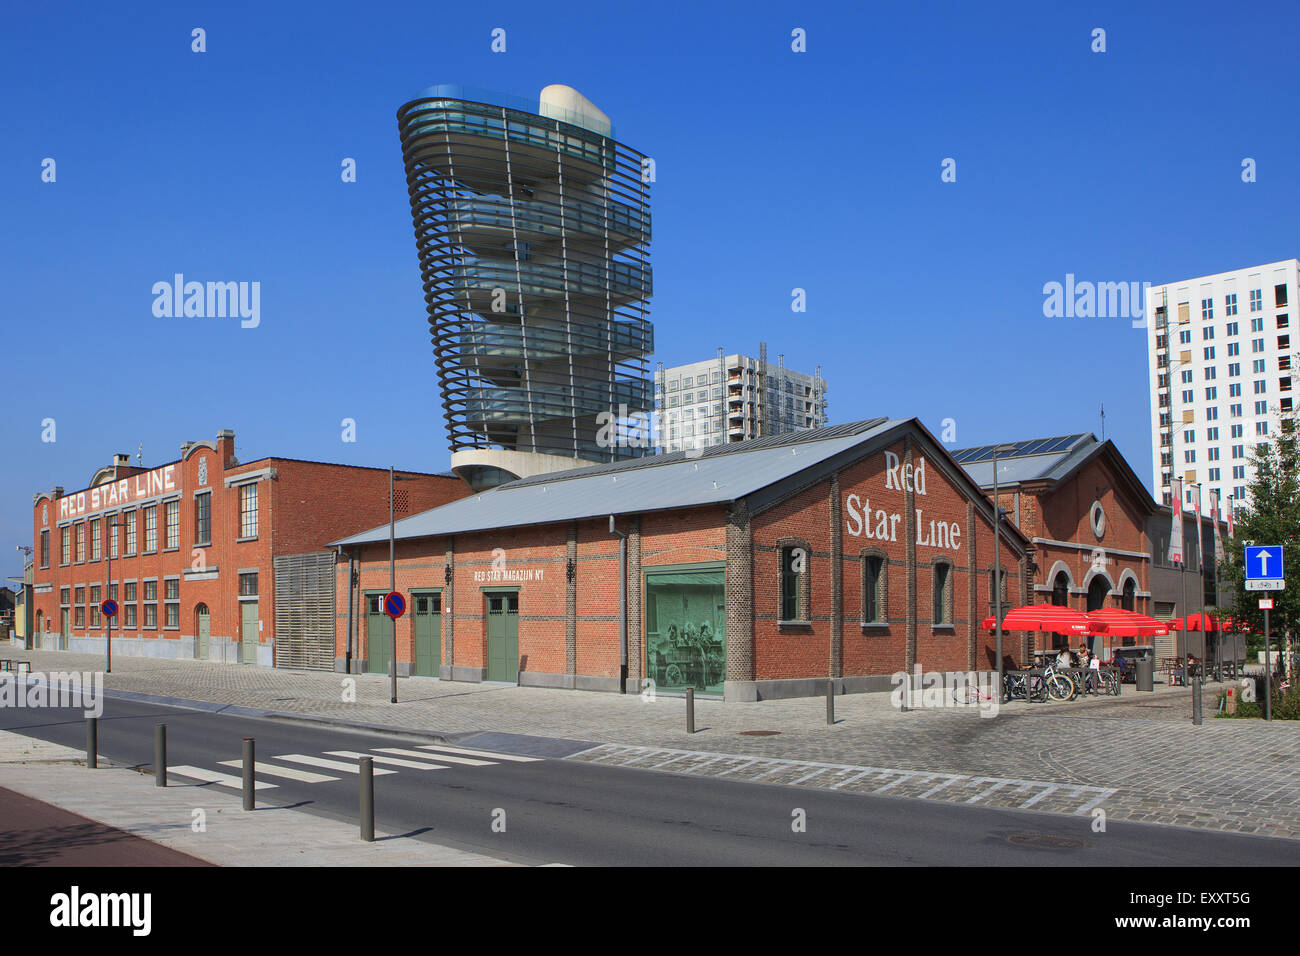 La facciata della Red Star Line museo di Anversa, Belgio Foto Stock